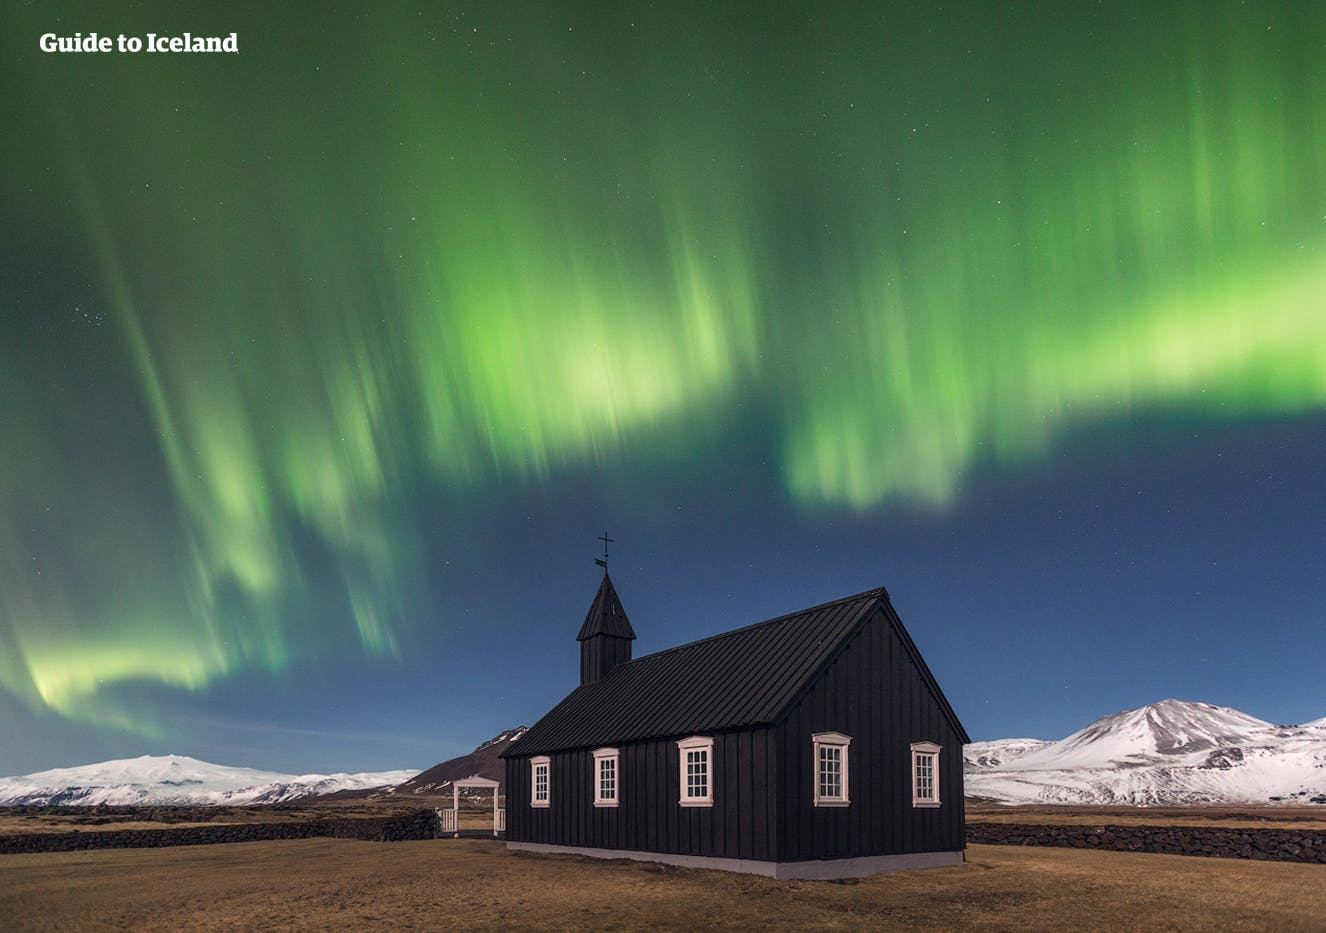 De lucht boven de zwarte kerk in Búðir op het schiereiland Snæfellsnes, in de groene gloed van het noorderlicht